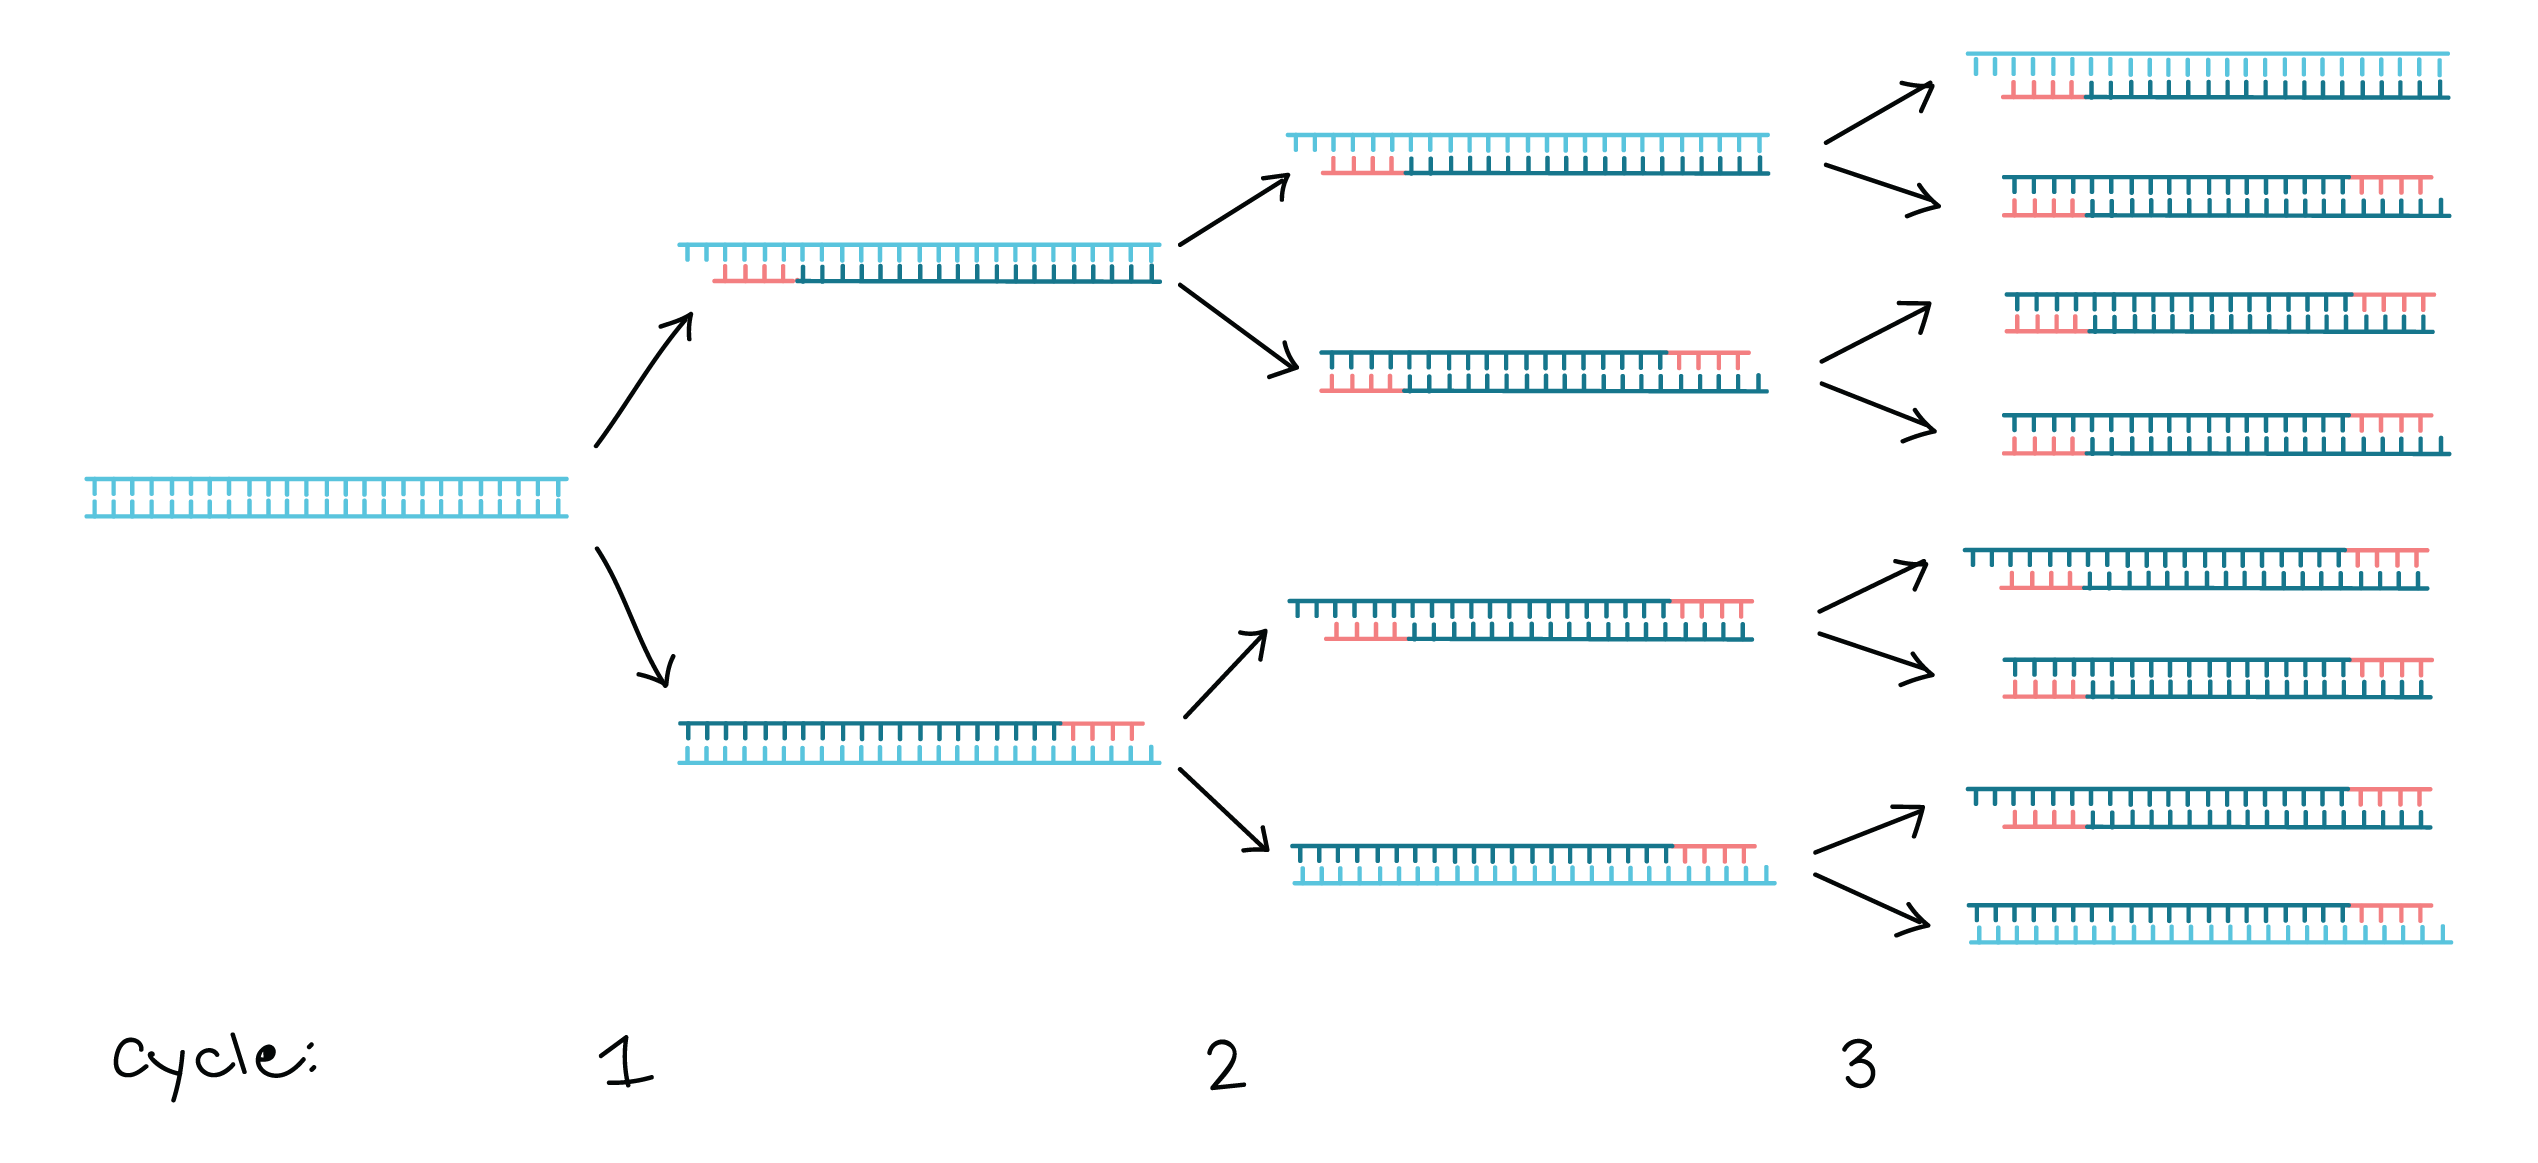 سنتز DNA- فرایند PCR- درمان نگار ایندگان